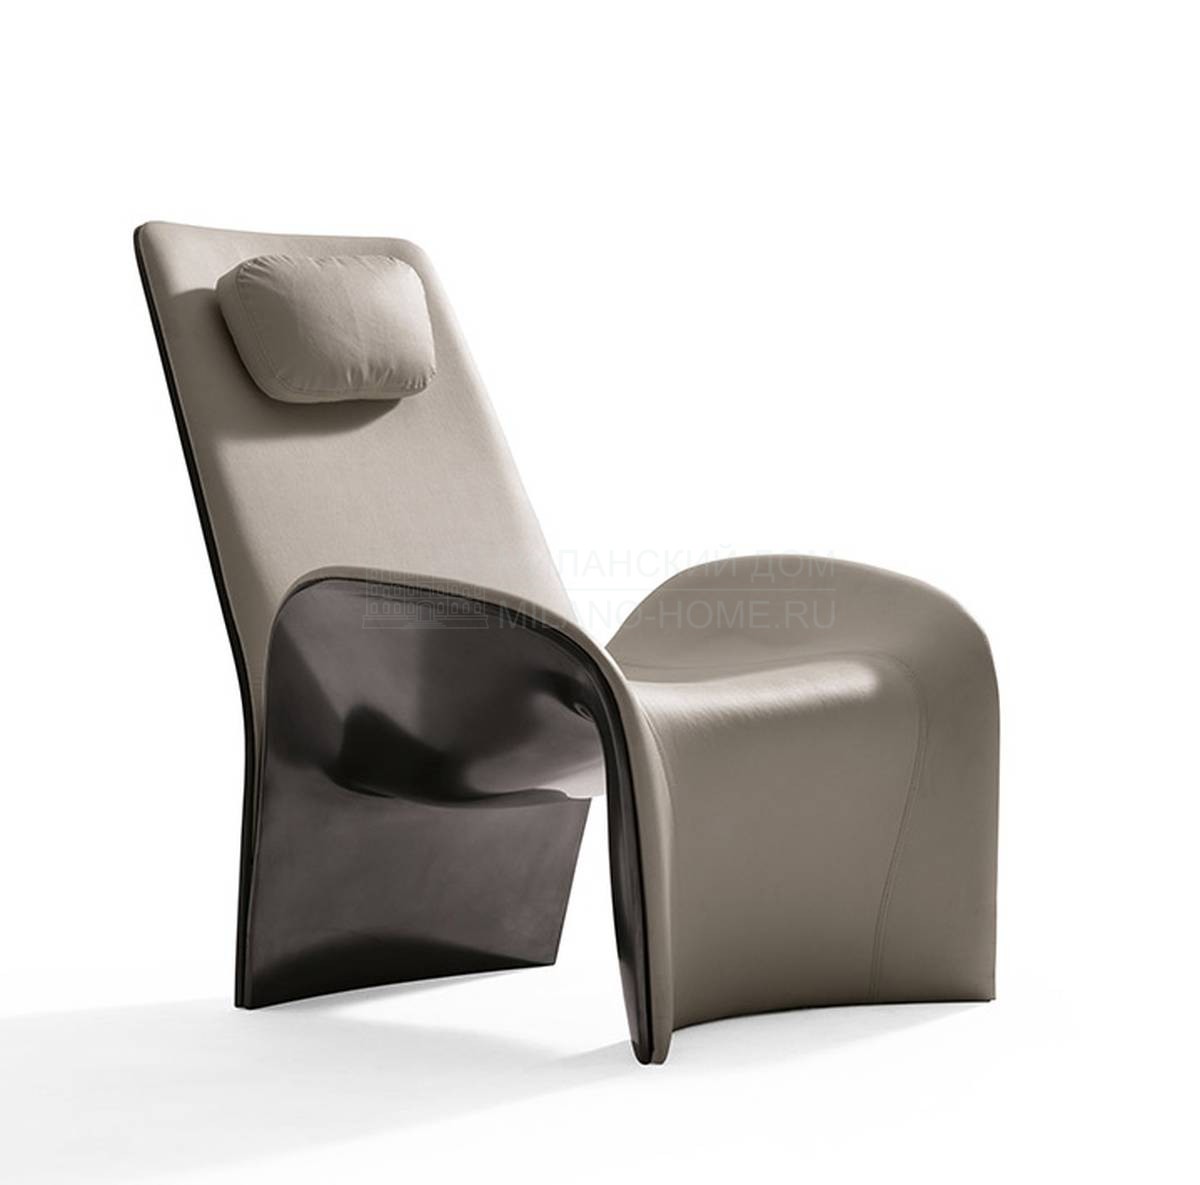 Кожаное кресло Eva / 66910 из Италии фабрики GIORGETTI